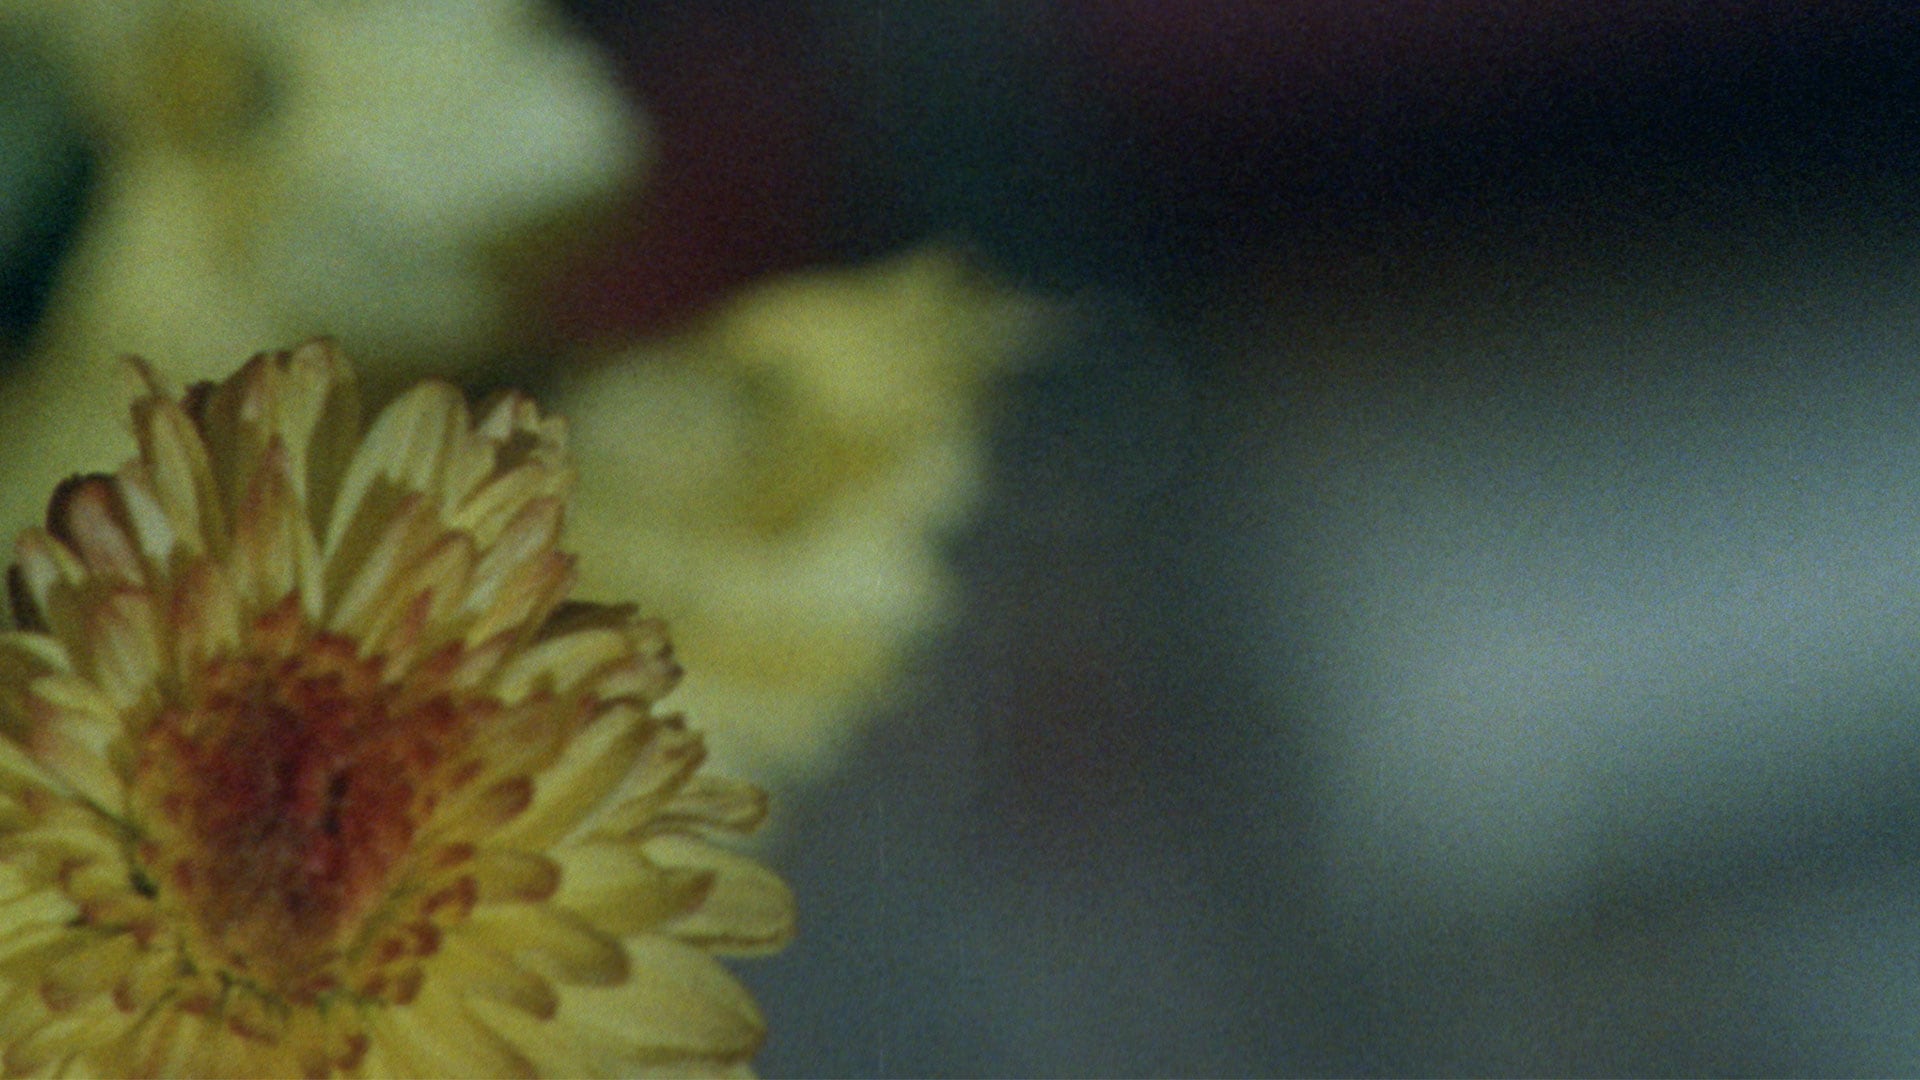 Still from The Mirror Garden, a film by Tom Chomont